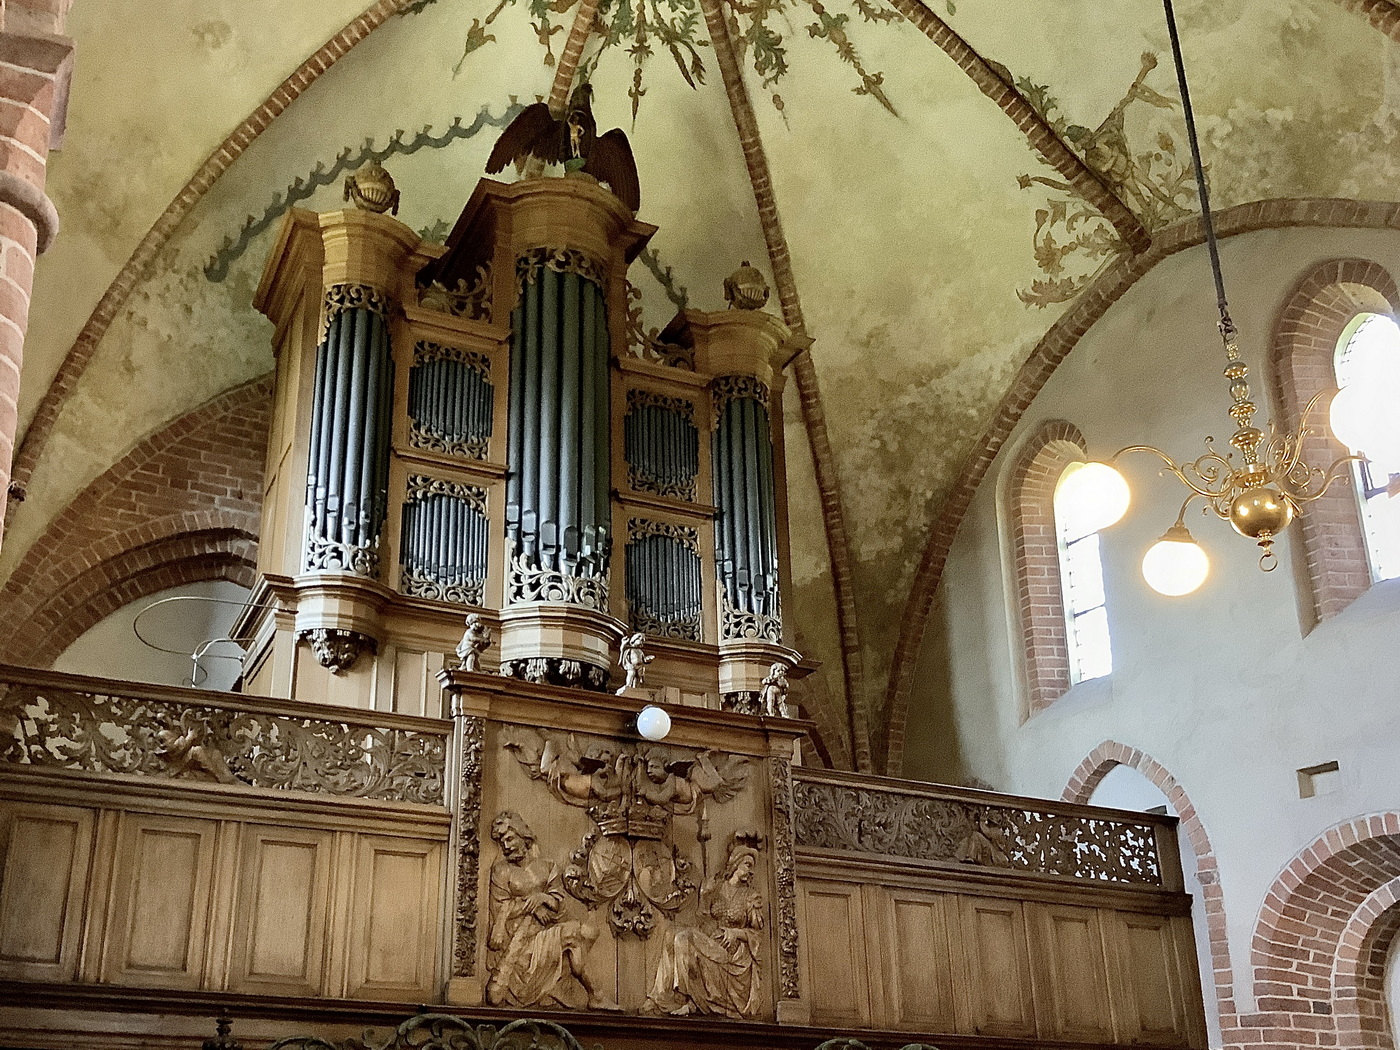 Orgel met balustrade rond 1680. Foto: ©Jur Kuipers, 2020.